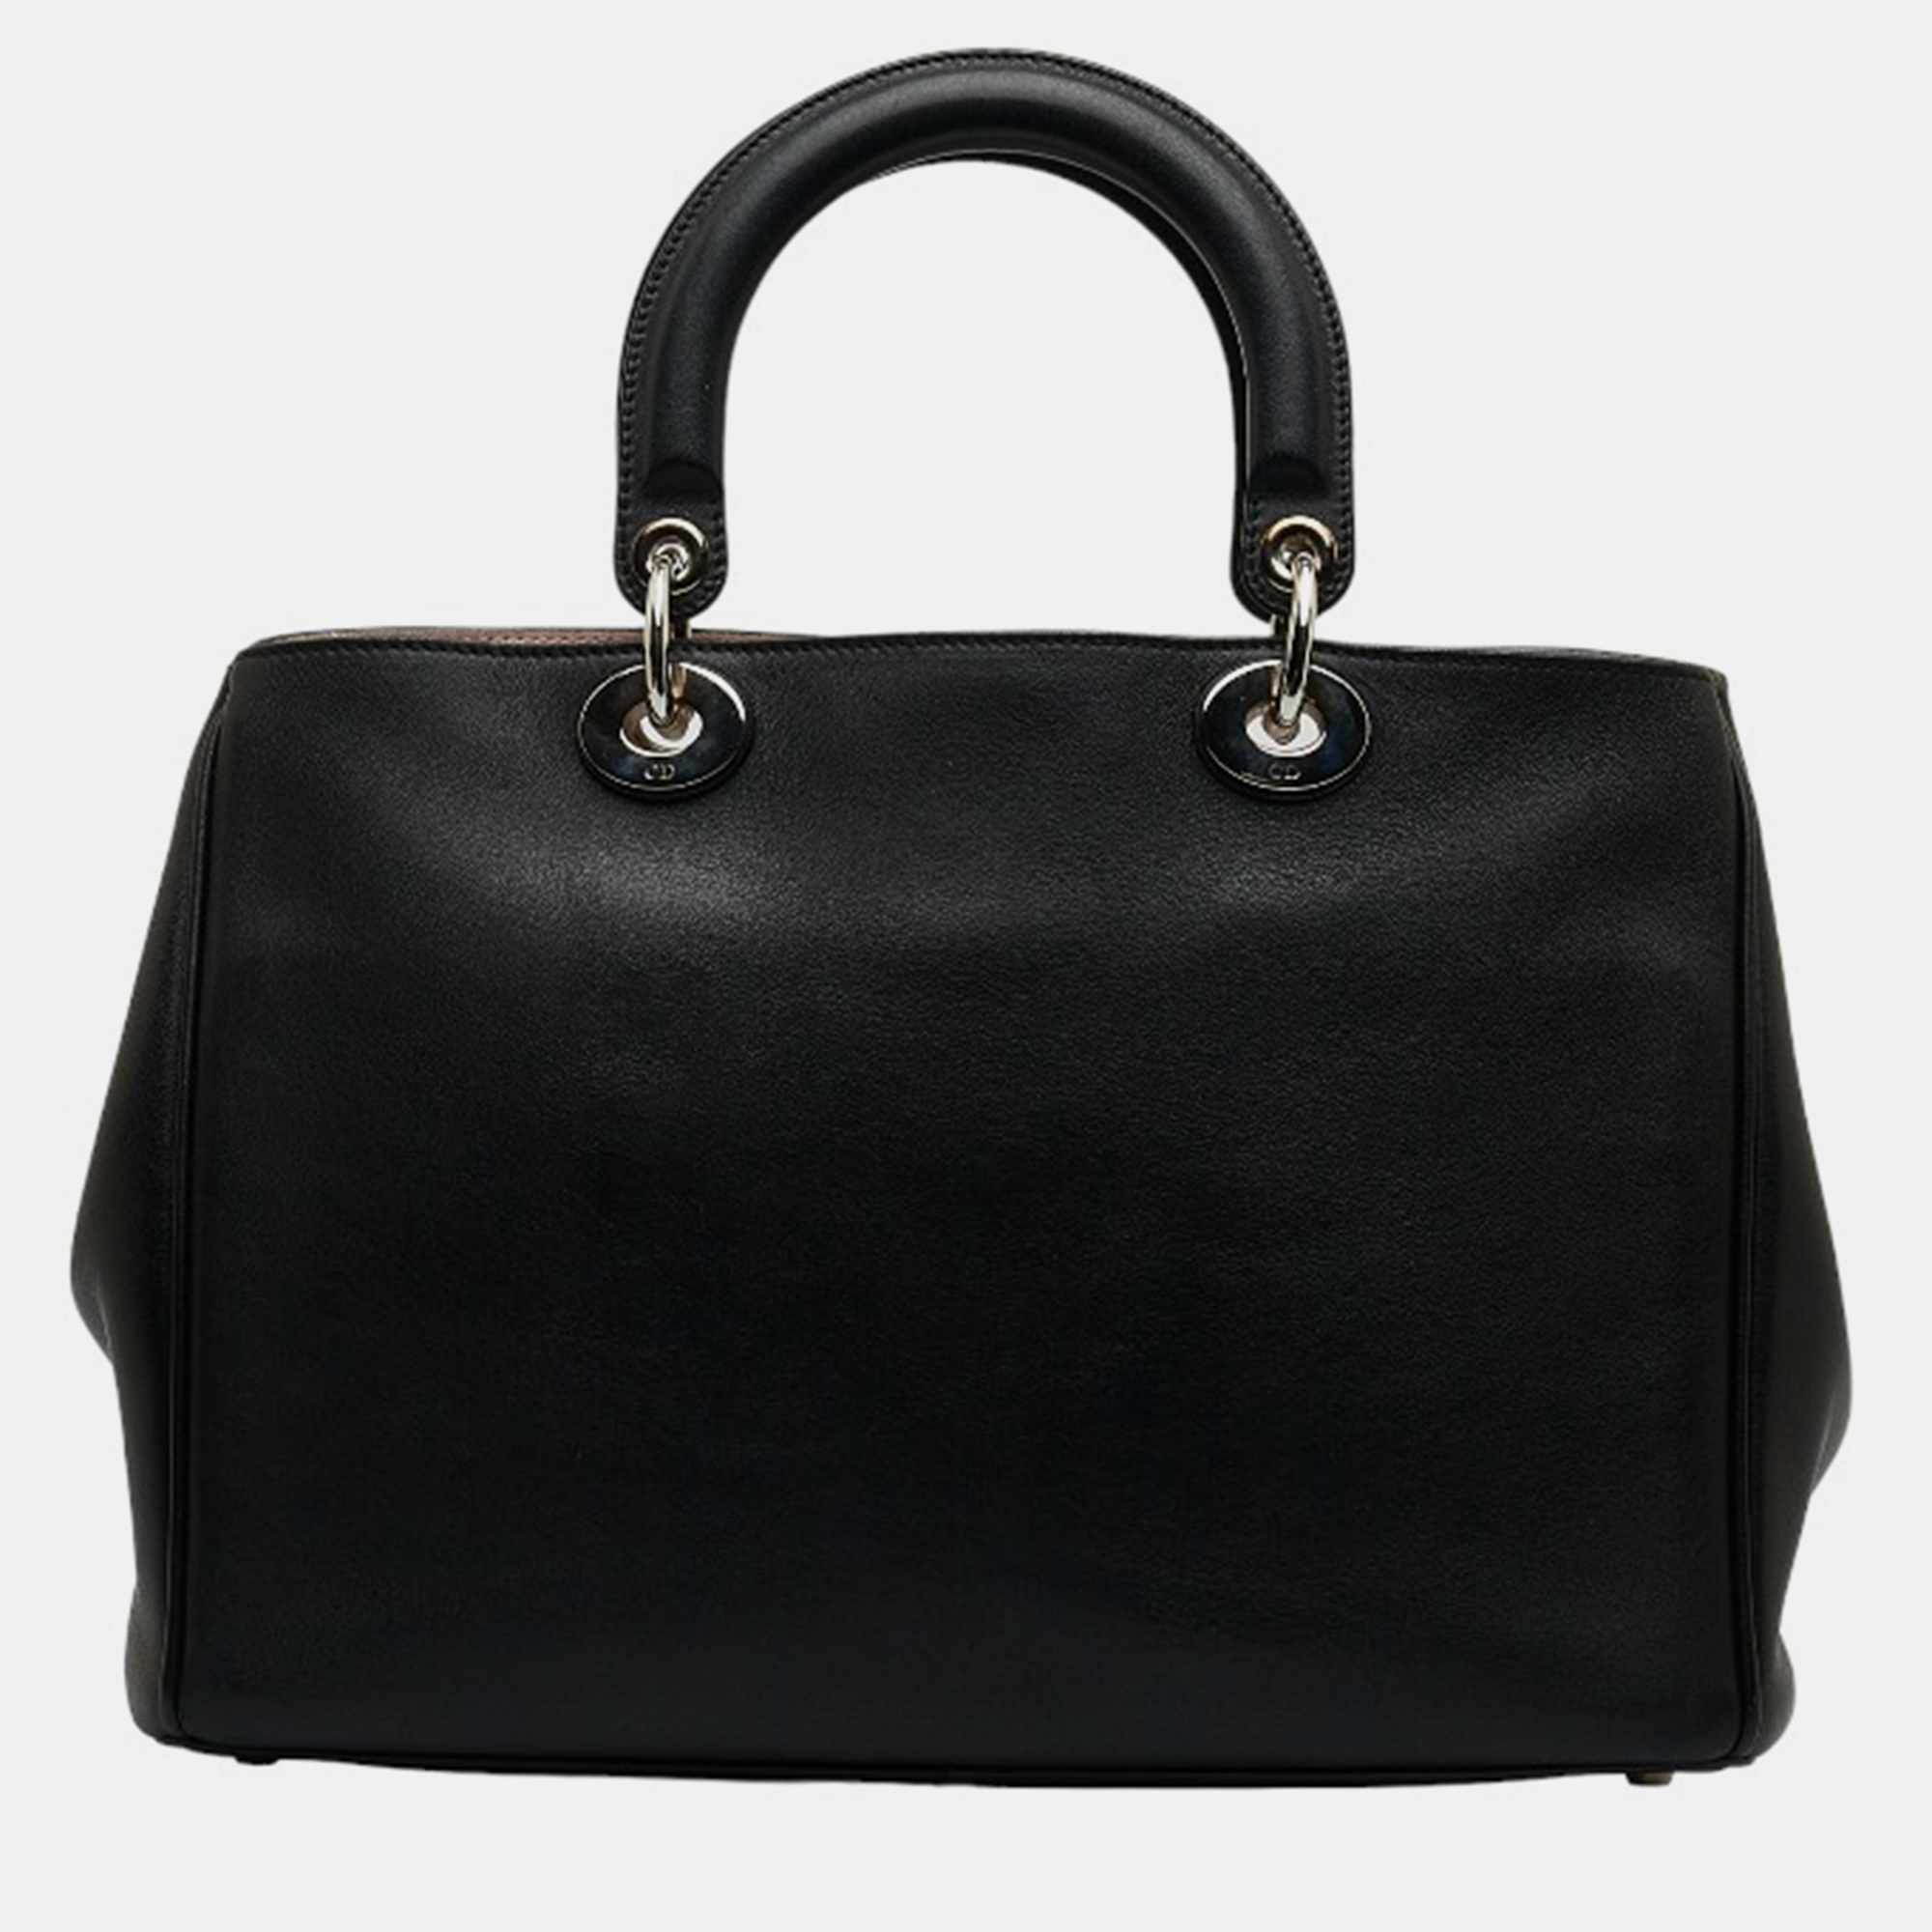 Dior Black Diorissimo Leather Tote Bag